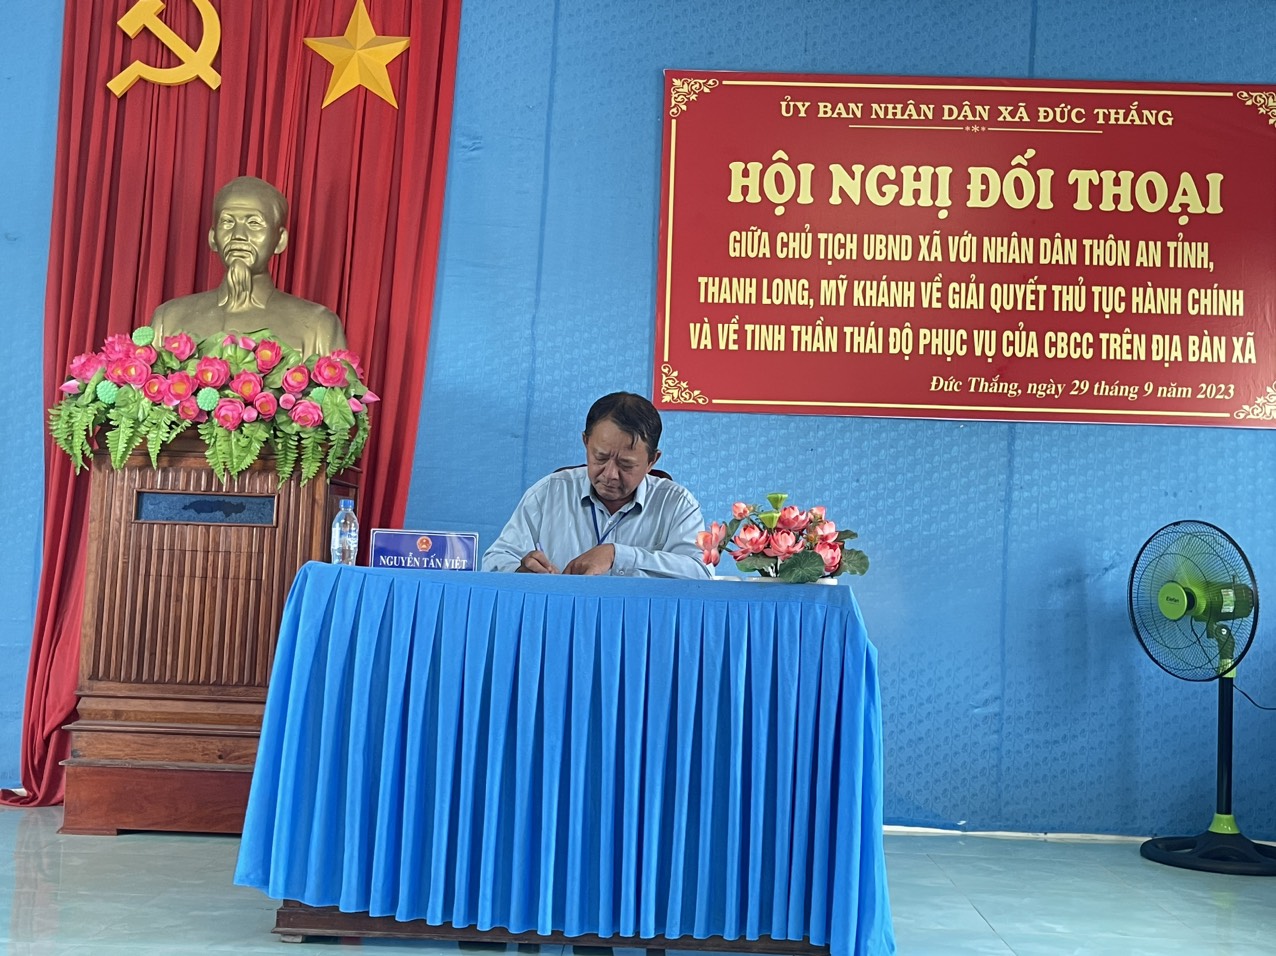 Hội nghị tiếp xúc đối thoại giữa Chủ tịch UBND xã với nhân dân thôn An Tỉnh, Thanh Long, Mỹ Khánh về TTHC, giải quyết TTHC và tinh thần thái độ phục vụ của CBCC trên địa bàn xã năm 2023